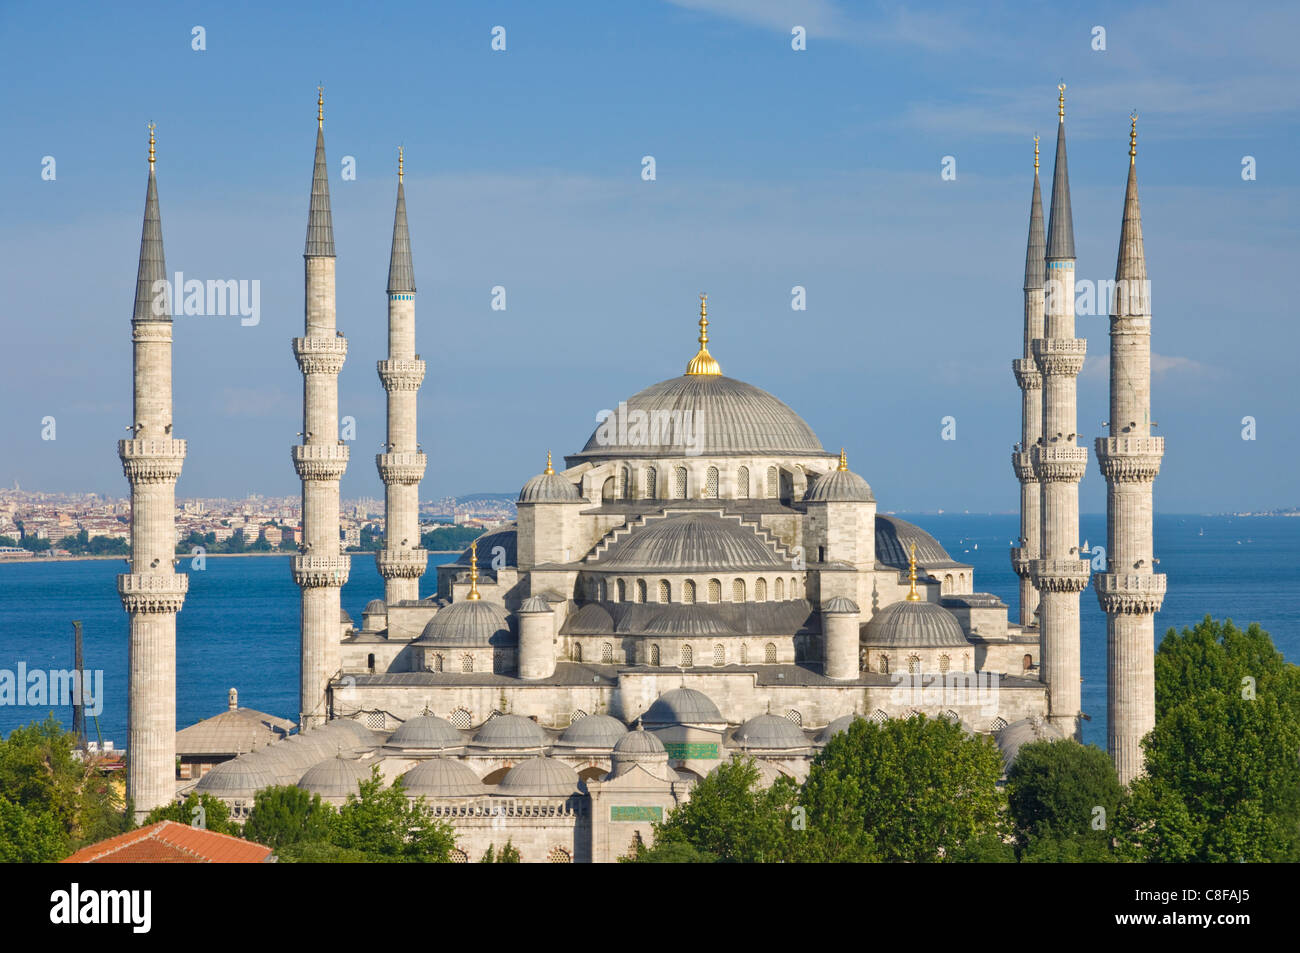 Die blaue Moschee (Sultan Ahmet Camii) mit Kuppeln und sechs Minarette, Sultanahmet, zentral-Istanbul, Türkei Stockfoto